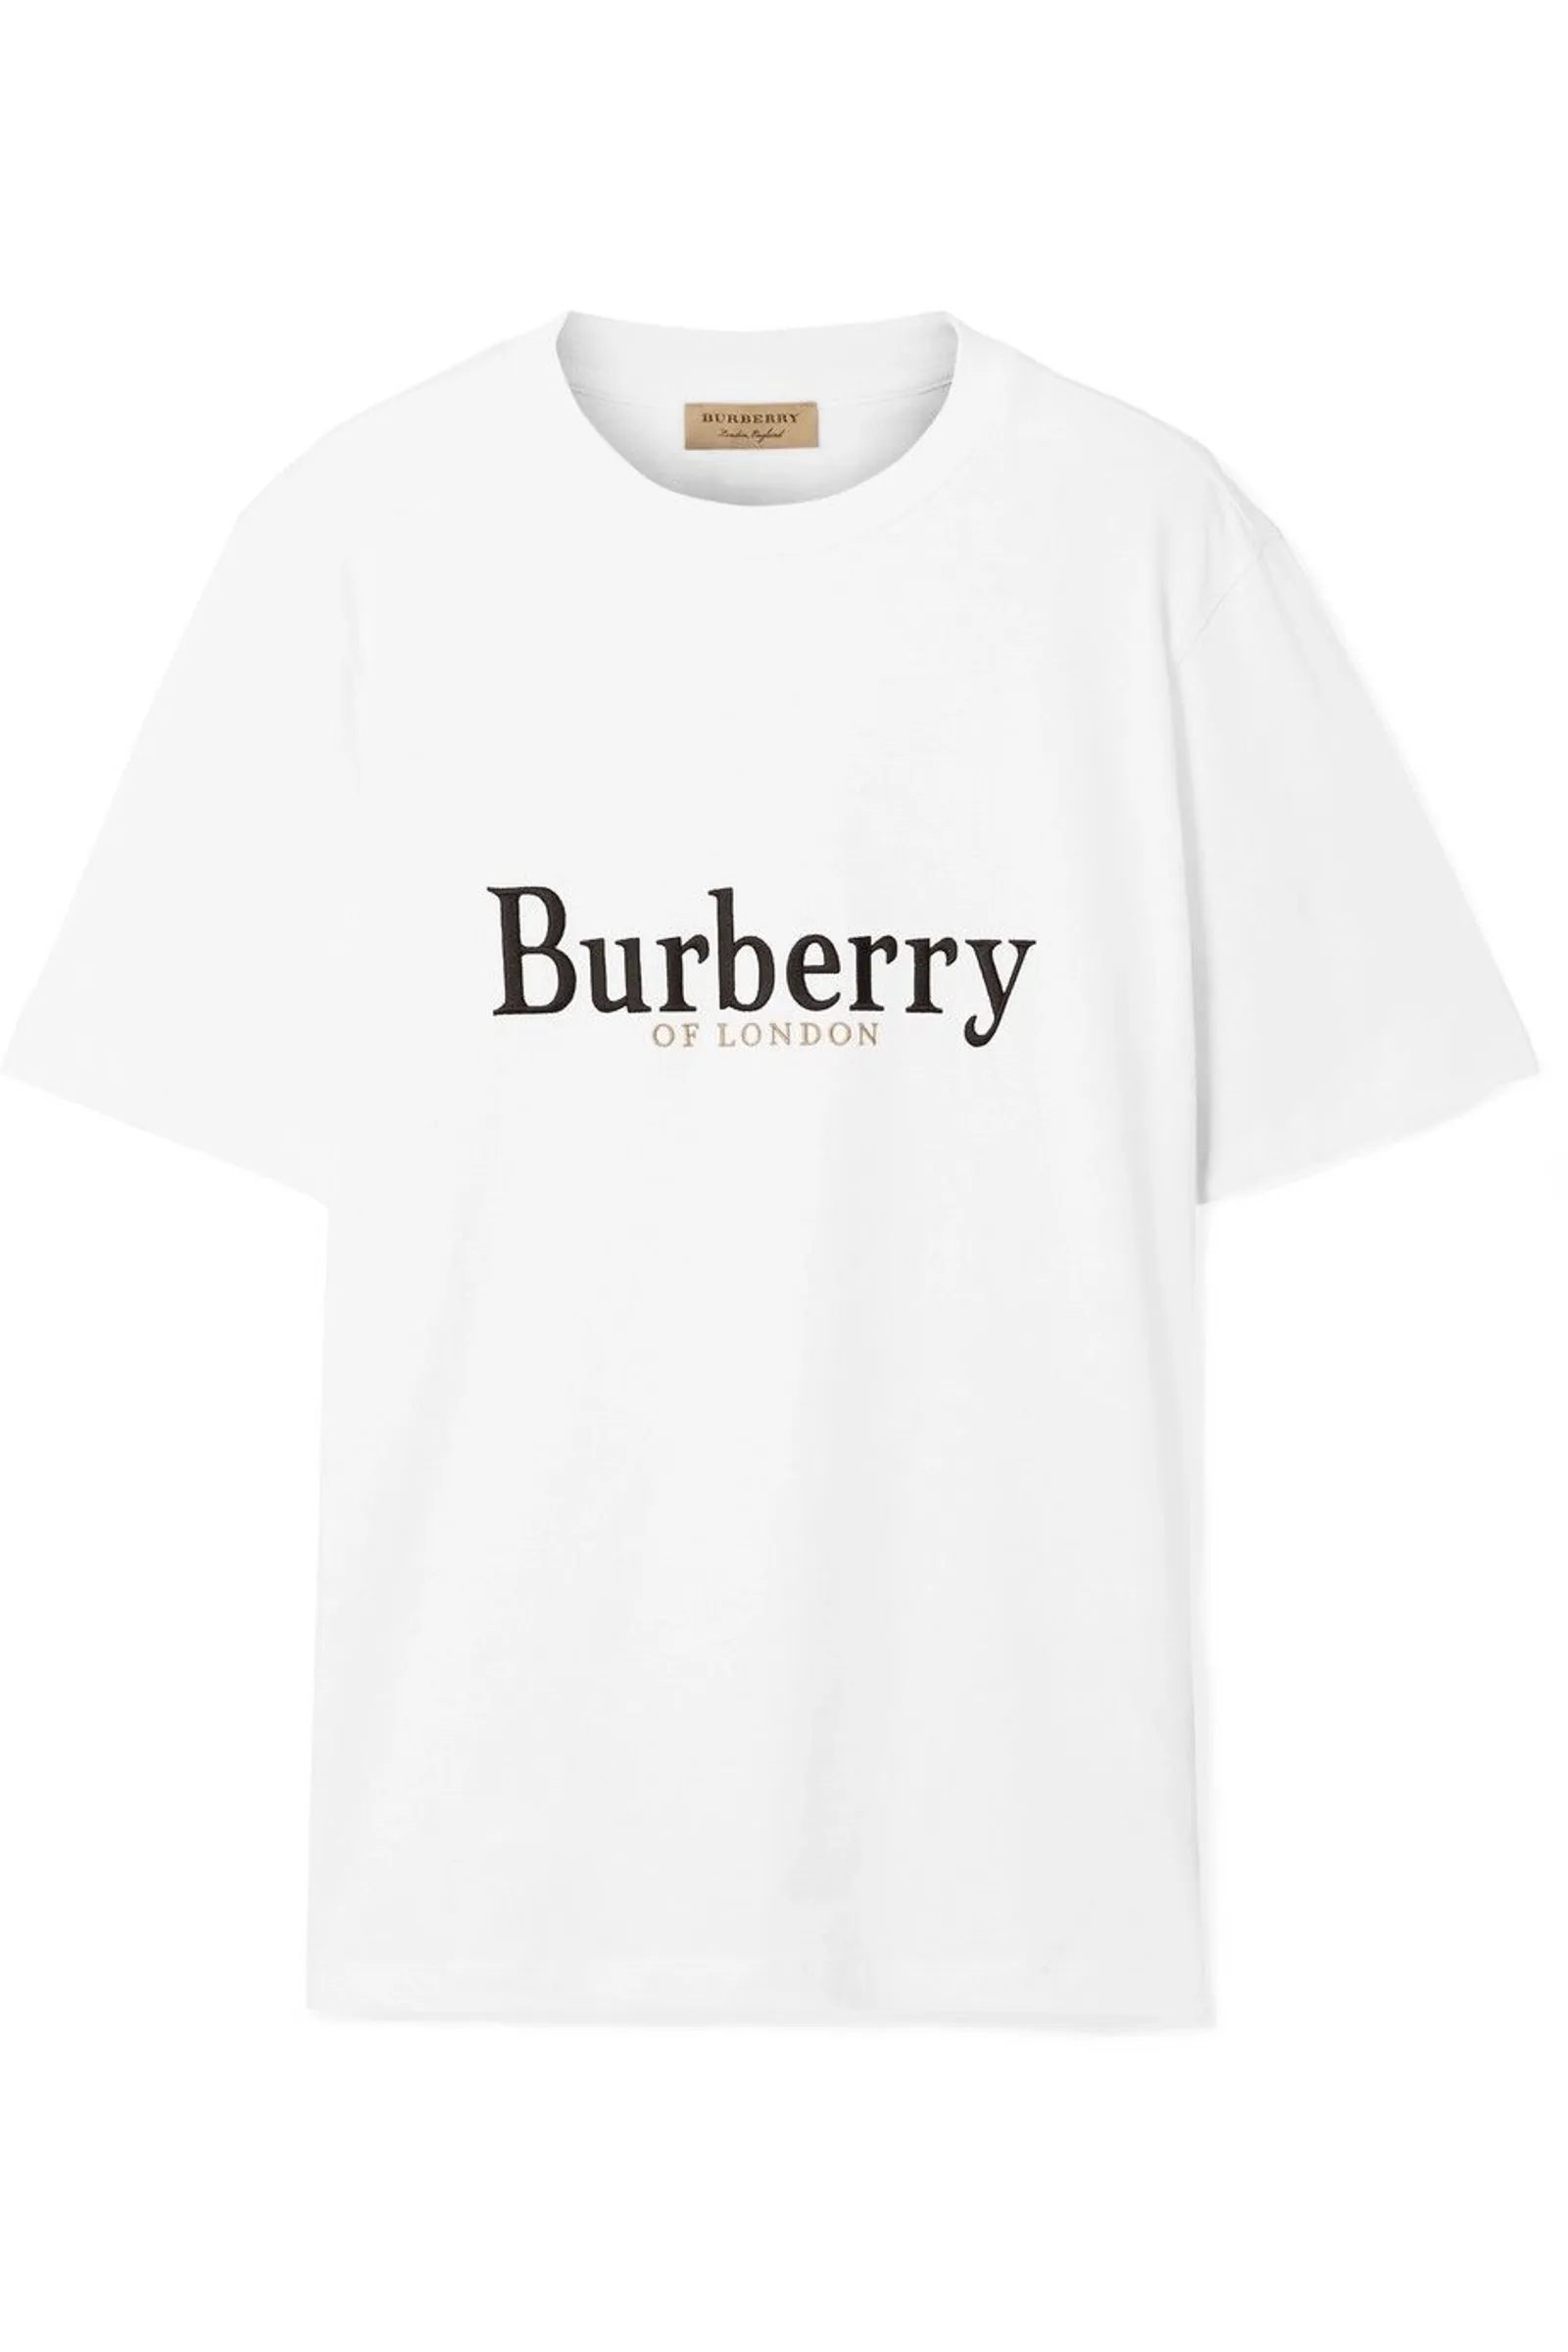 #PopbelaOOTD: Trend T-shirt Desainer yang Statement!